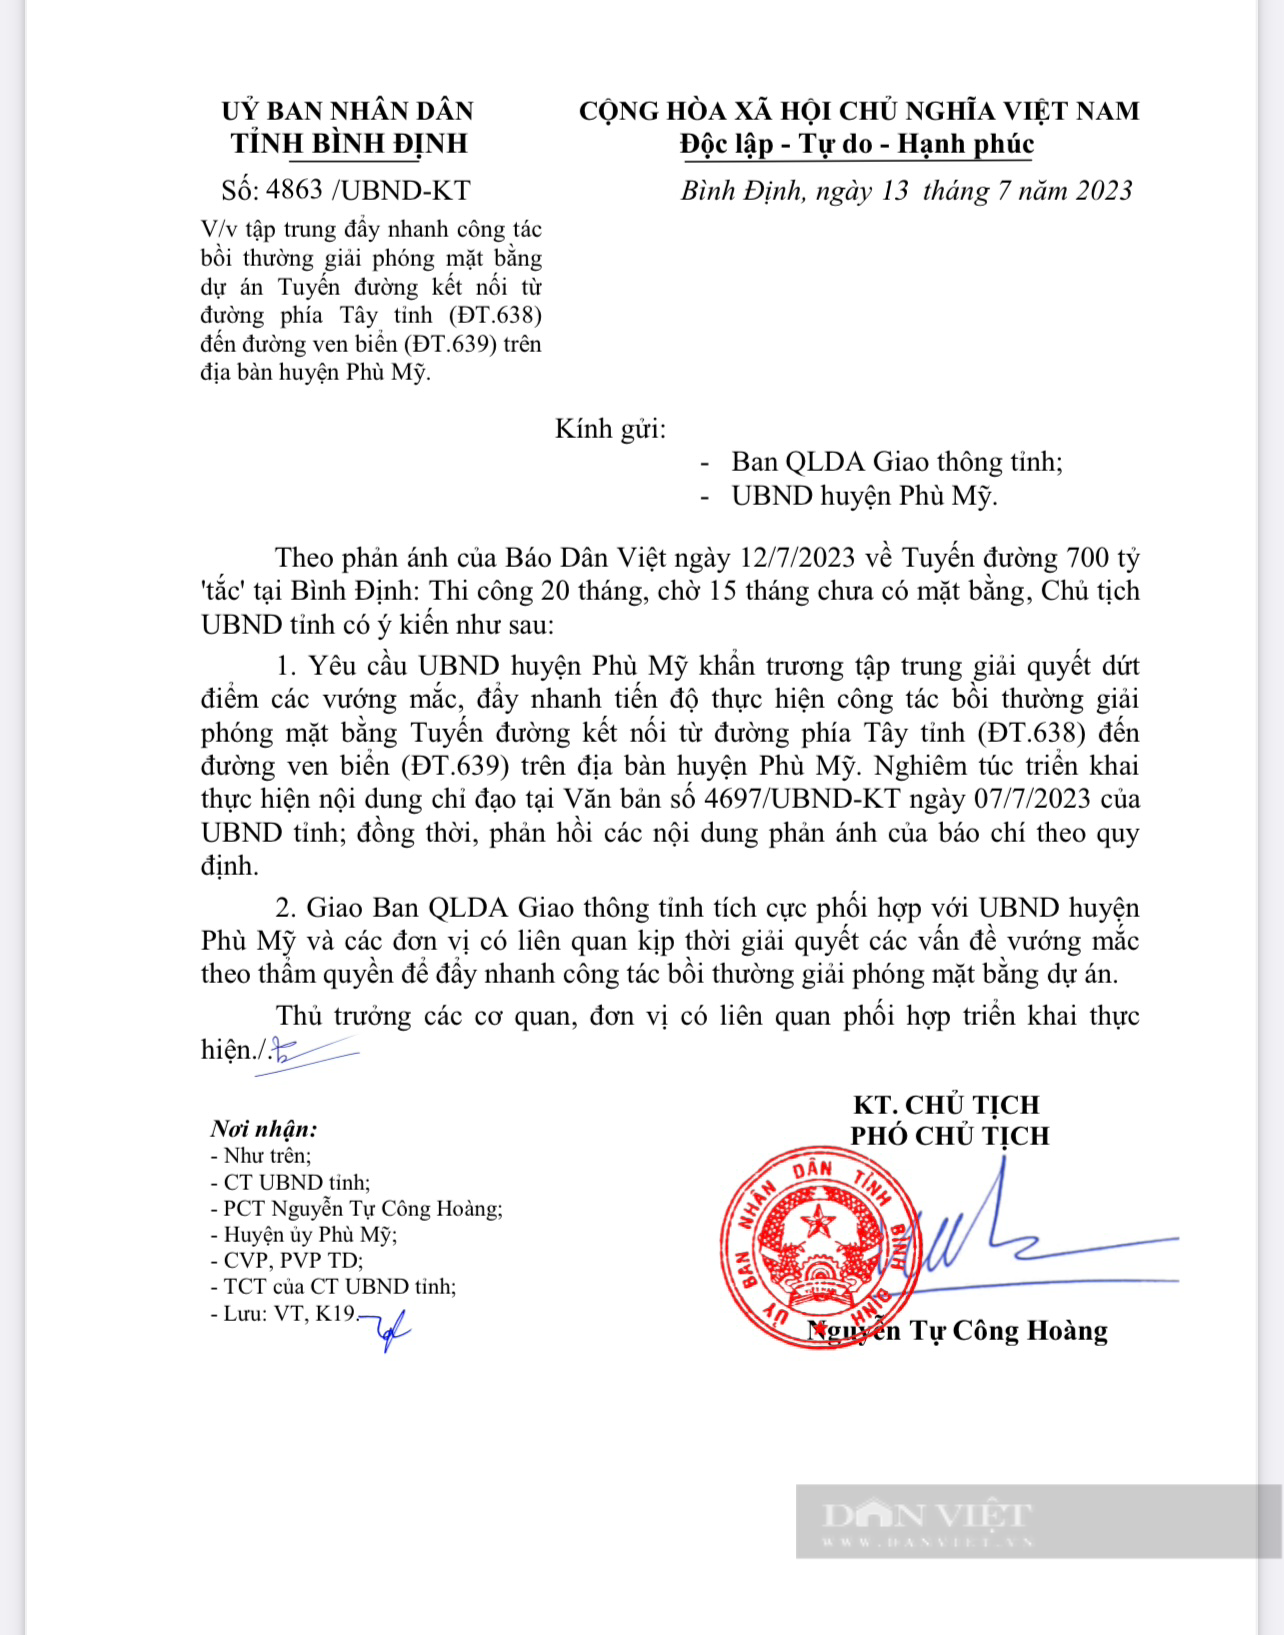 Chủ tịch Bình Định chỉ đạo xử lý vấn đề báo Dân Việt phản ánh 'tuyến đường 700 tỷ đồng bị tắc' - Ảnh 1.